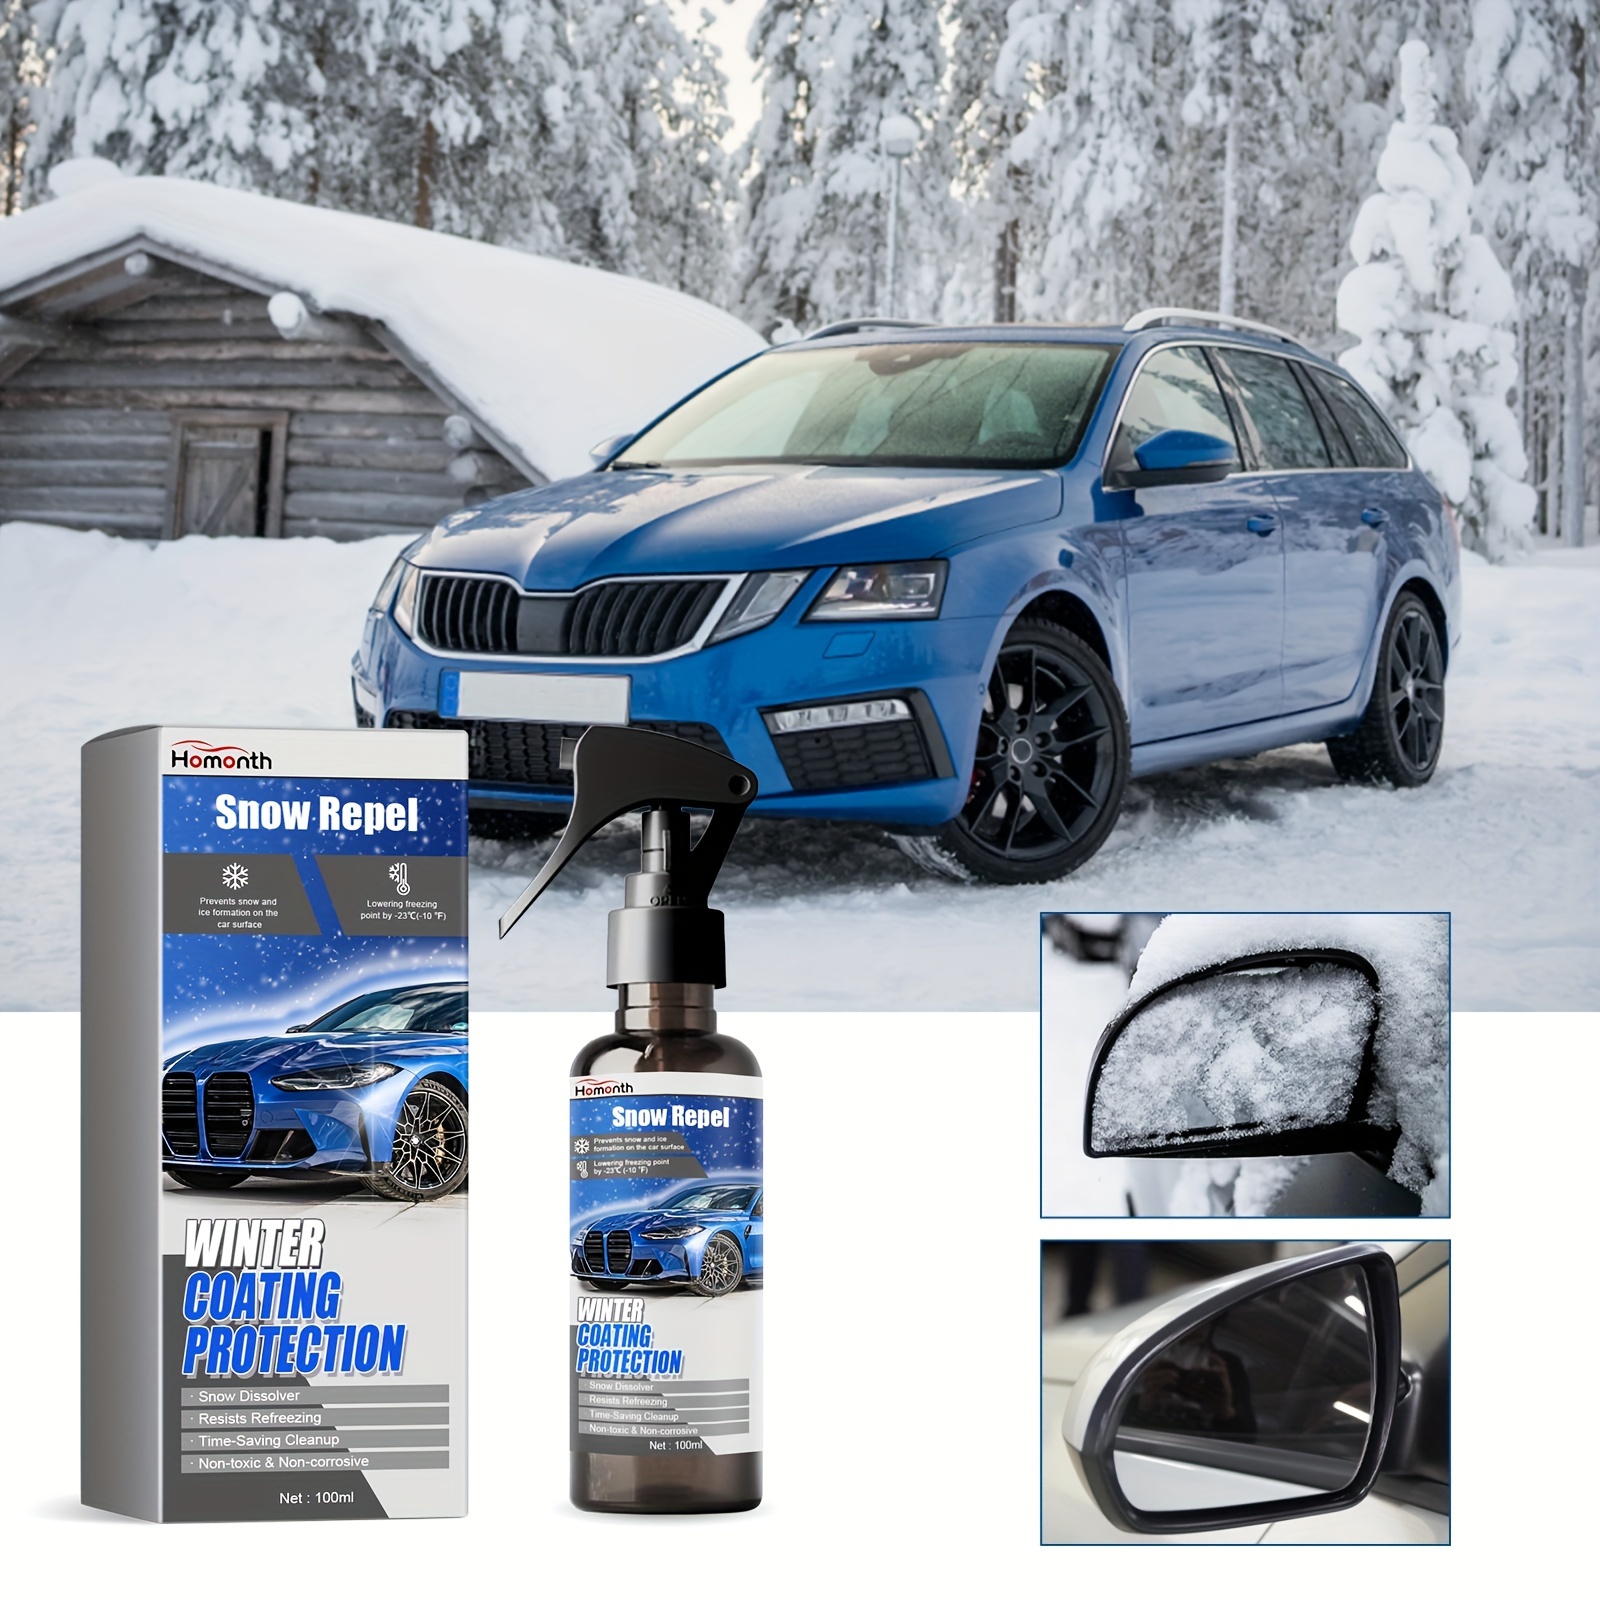 60ML Eis Entferner Spray Winter Auto Windschutzscheibe Deicer Schnee  Entfernung Spray Abtauung Schnee Spray Anti-Icing Kit Frost schutz